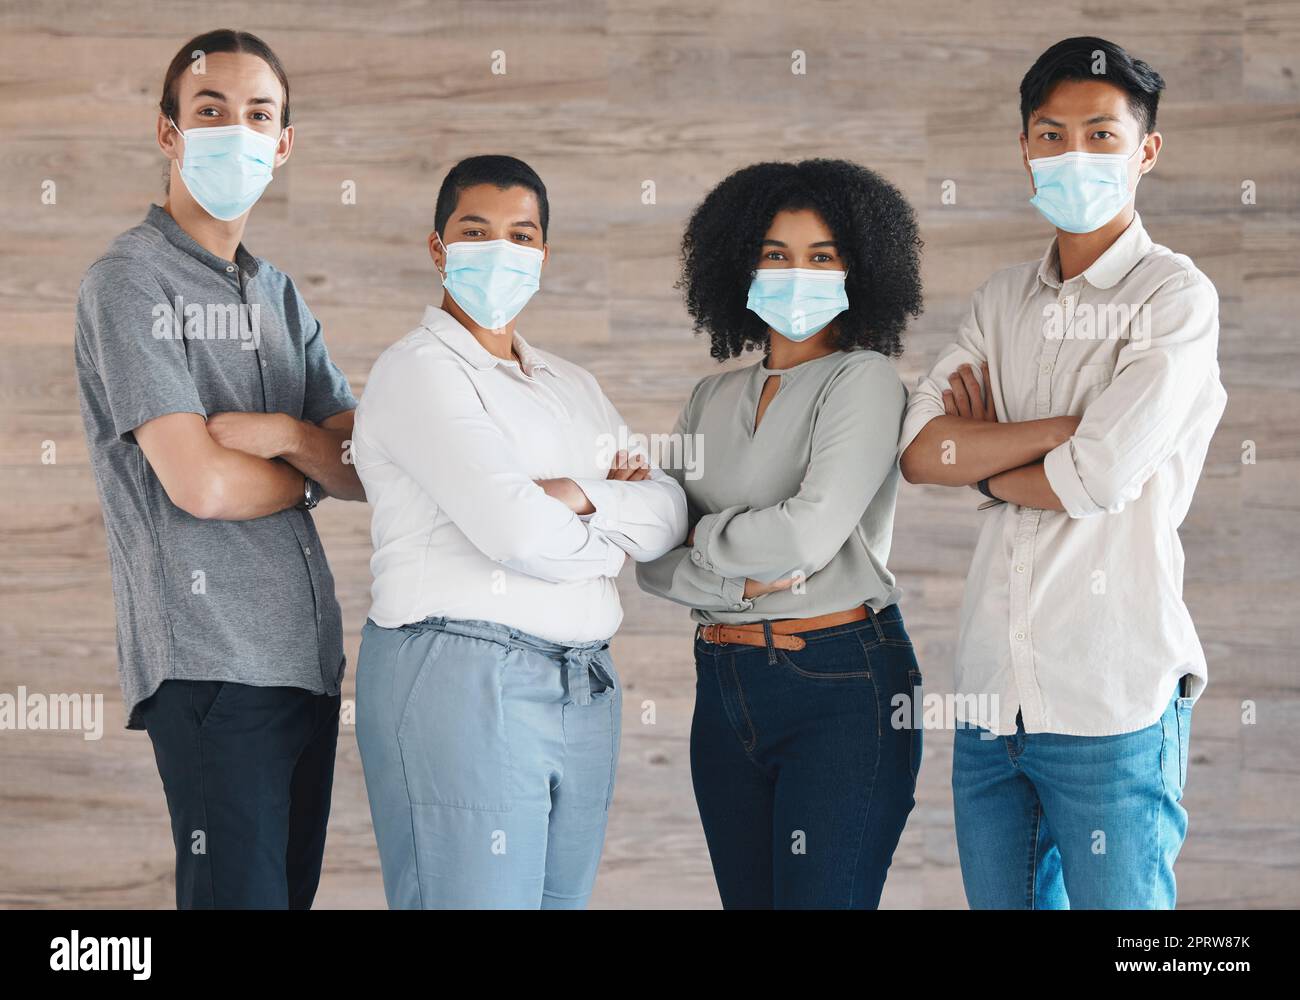 Portrait des Diversity-Teams mit Maske für covid Sicherheit, Gesundheit oder Schutz vor Bakterien, Viren oder covid 19. Eine Gruppe von Personen, Mitarbeitern oder Arbeitskräften, die solidarisch und unterstützend zusammenstehen Stockfoto